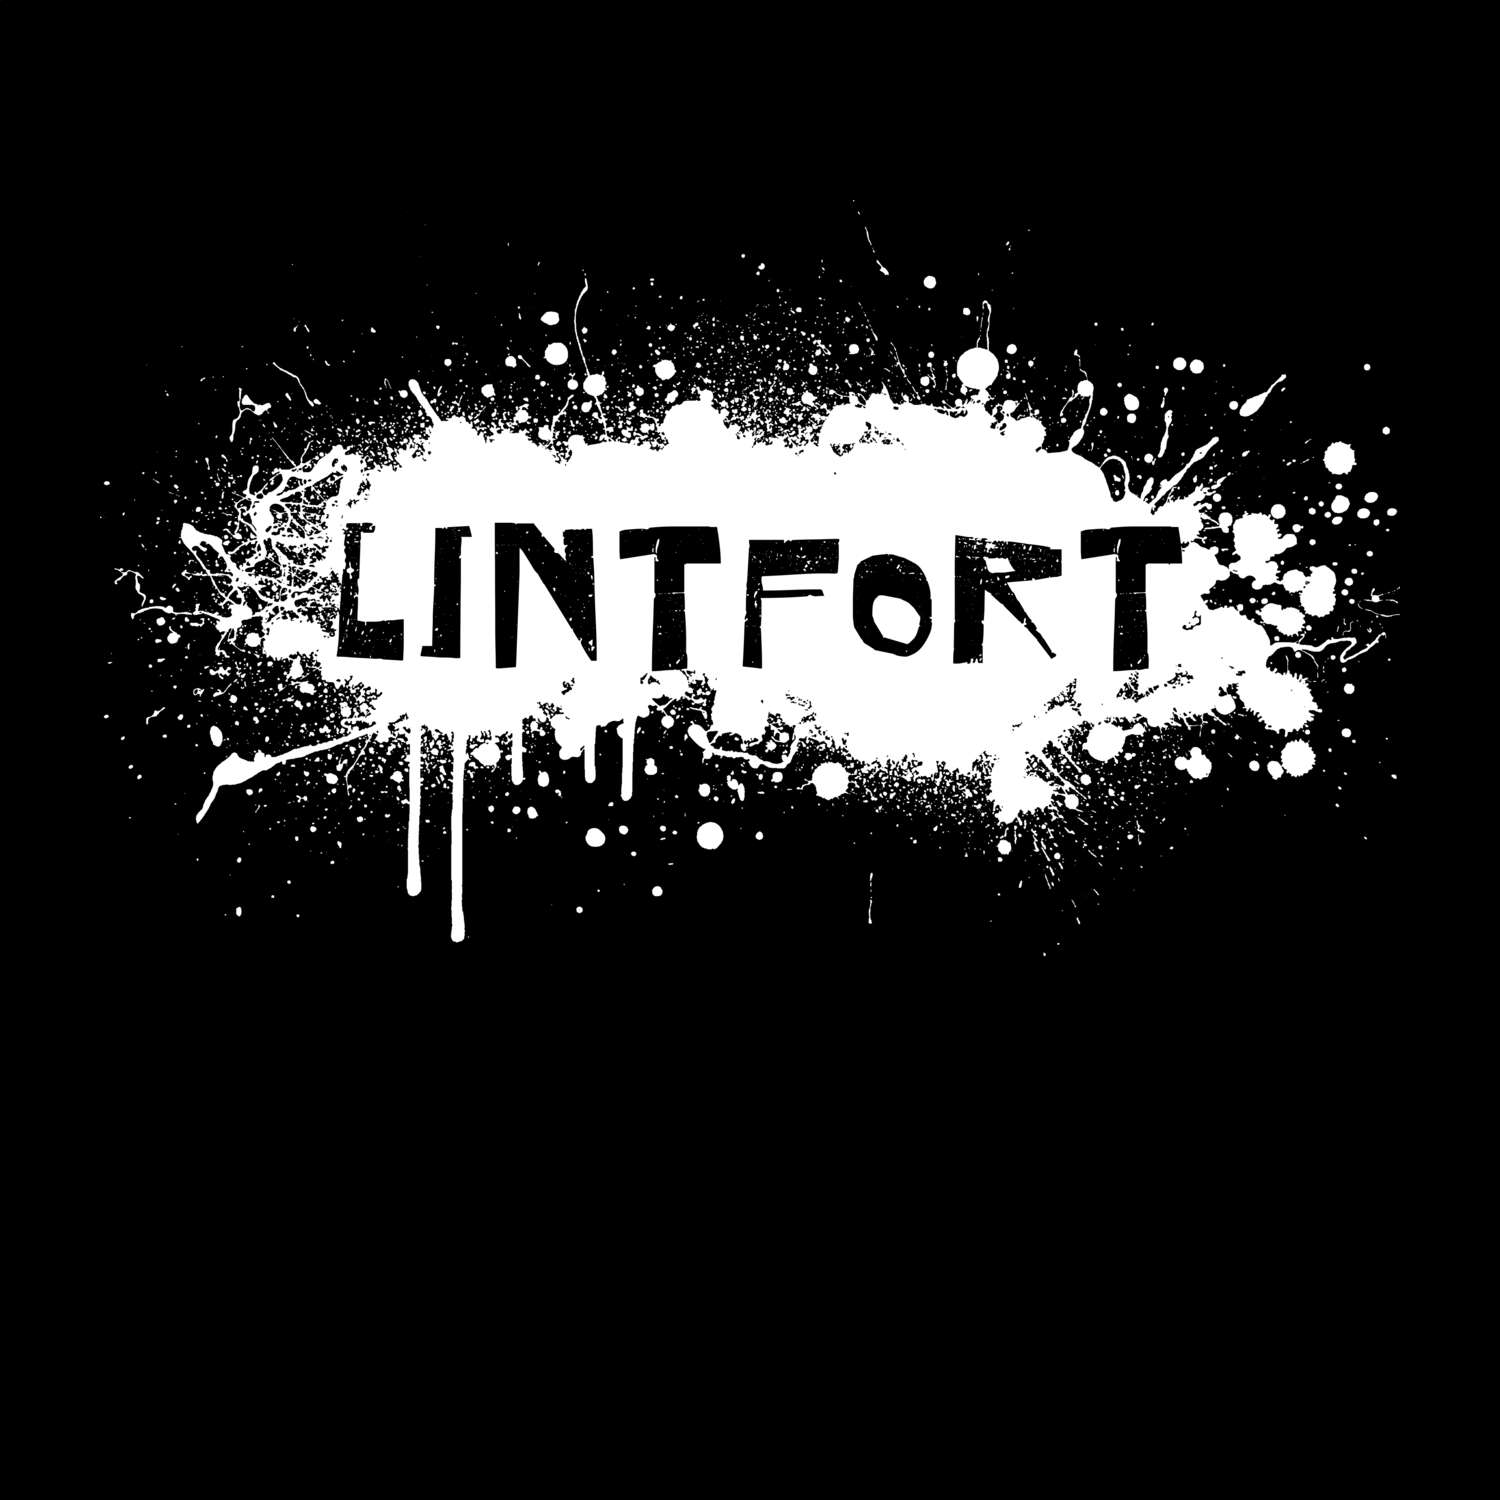 Lintfort T-Shirt »Paint Splash Punk«